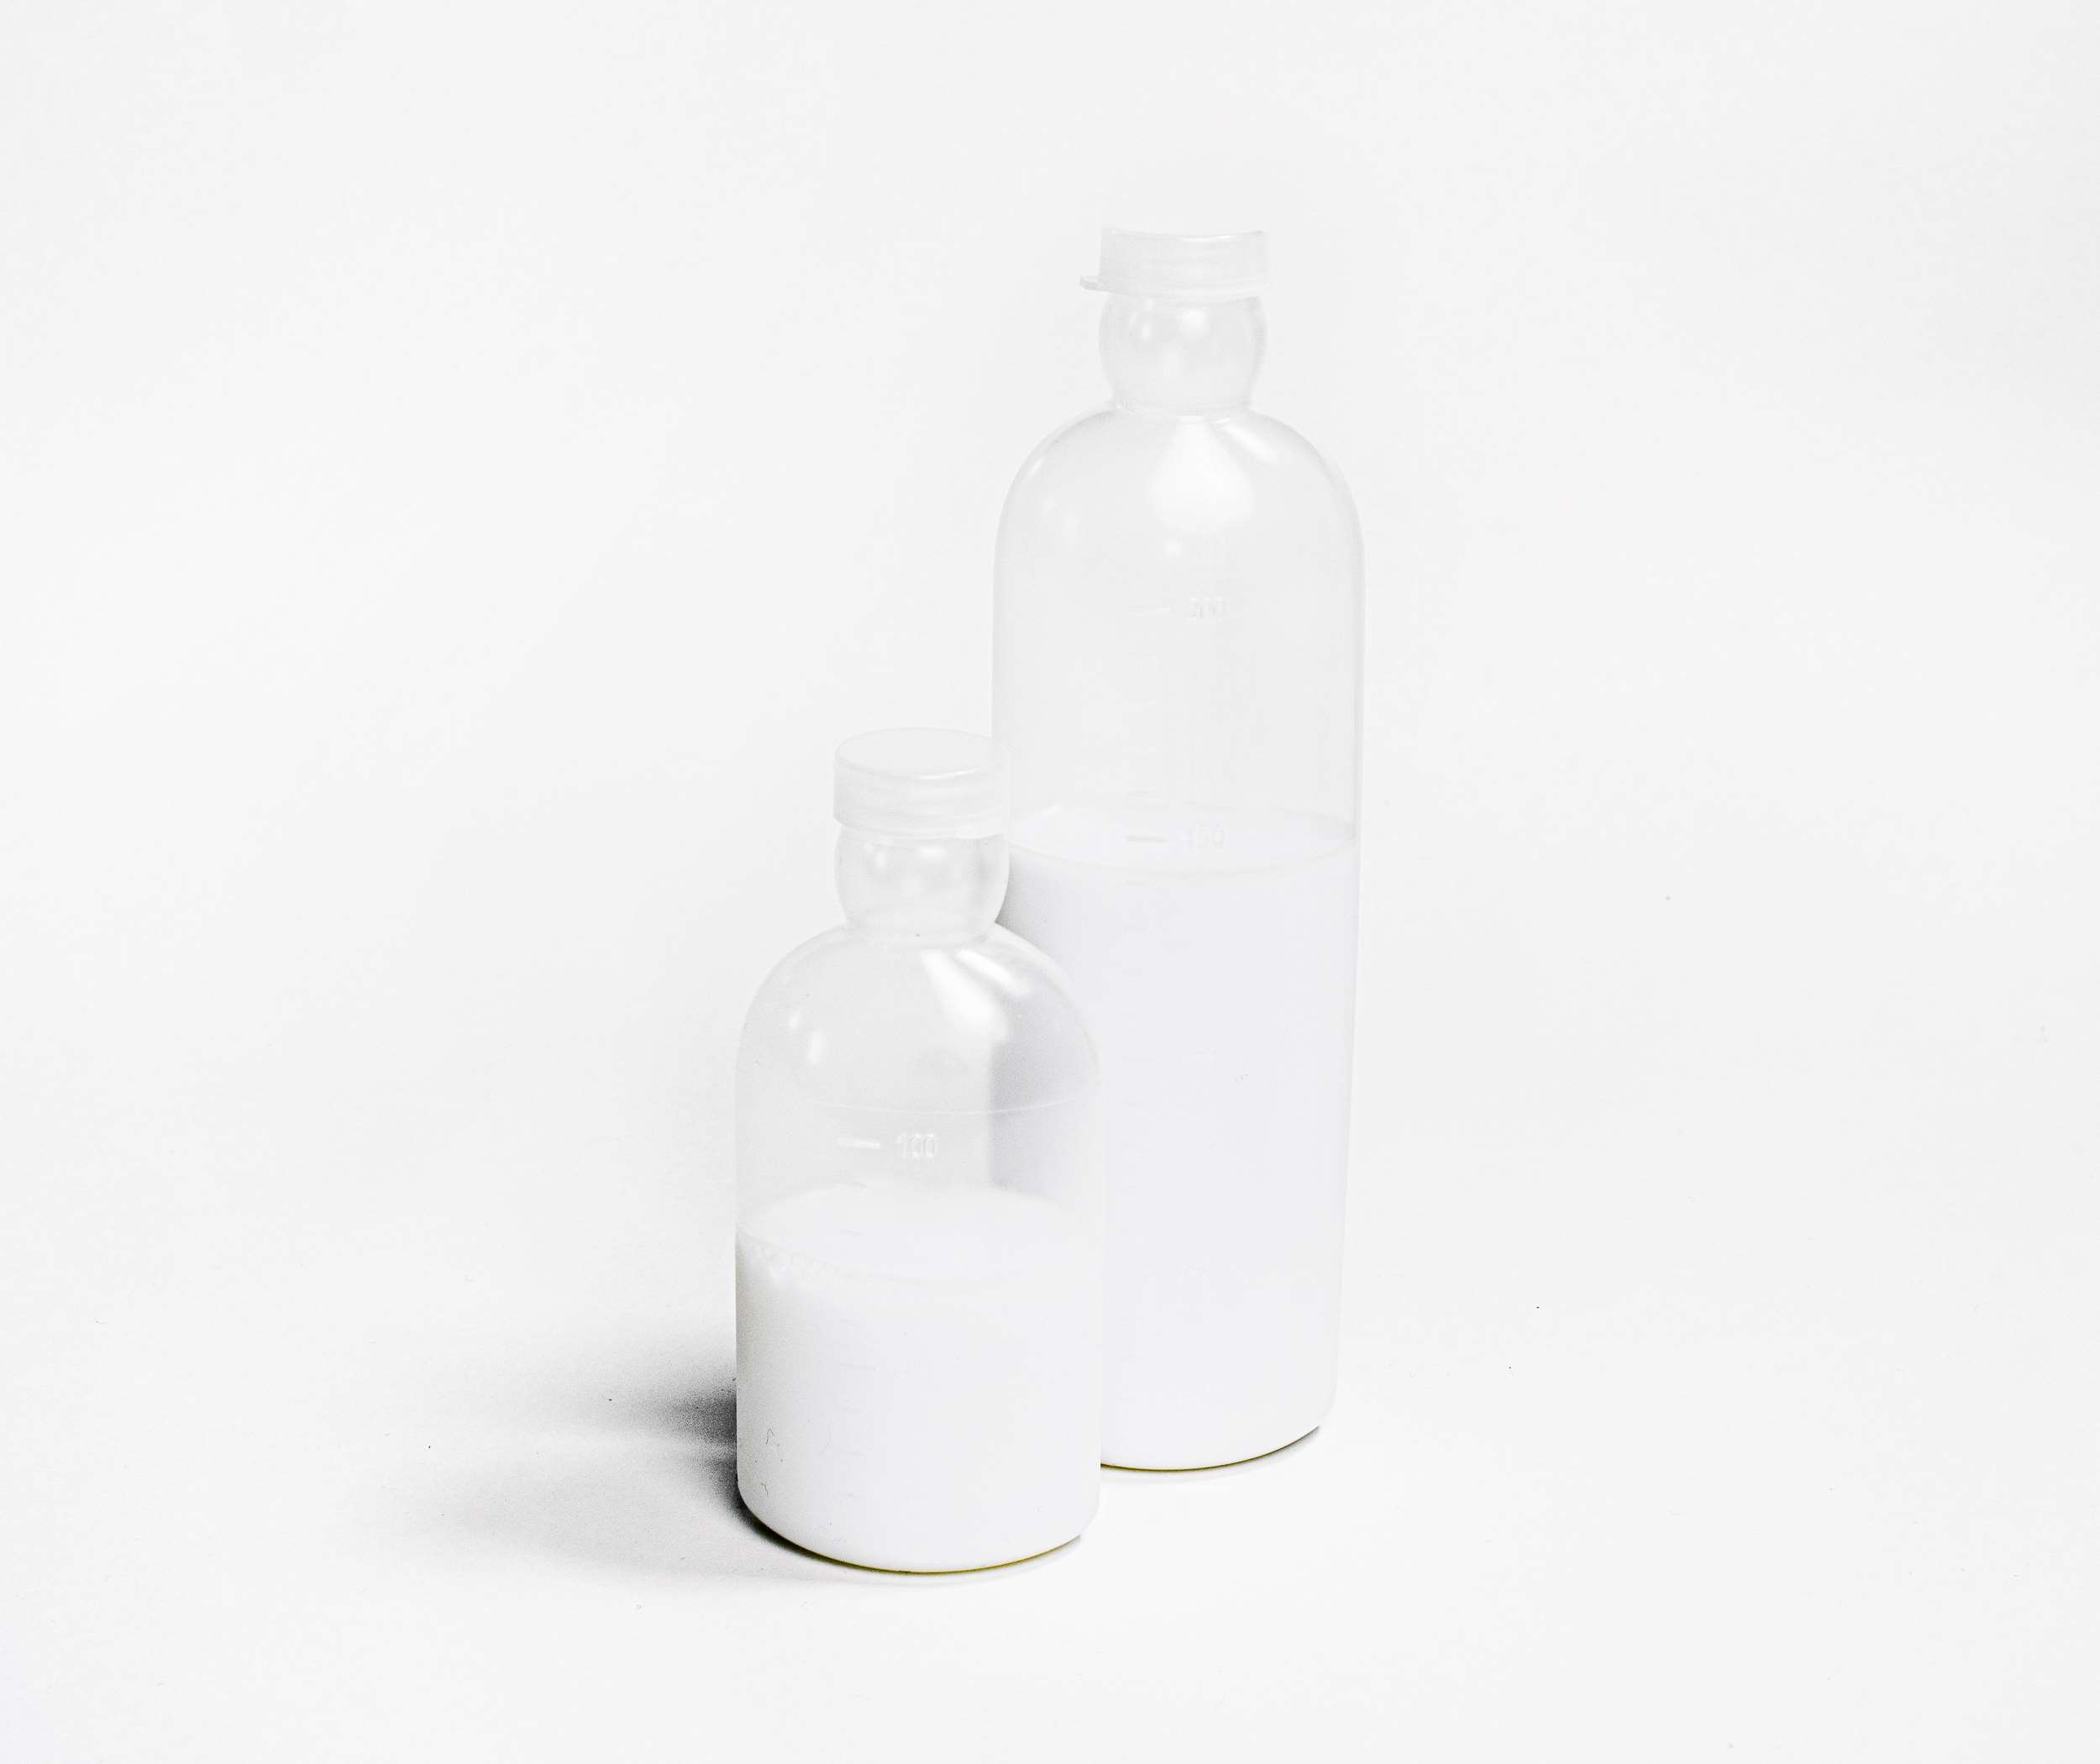 Flasker i plast fremstilles til industri